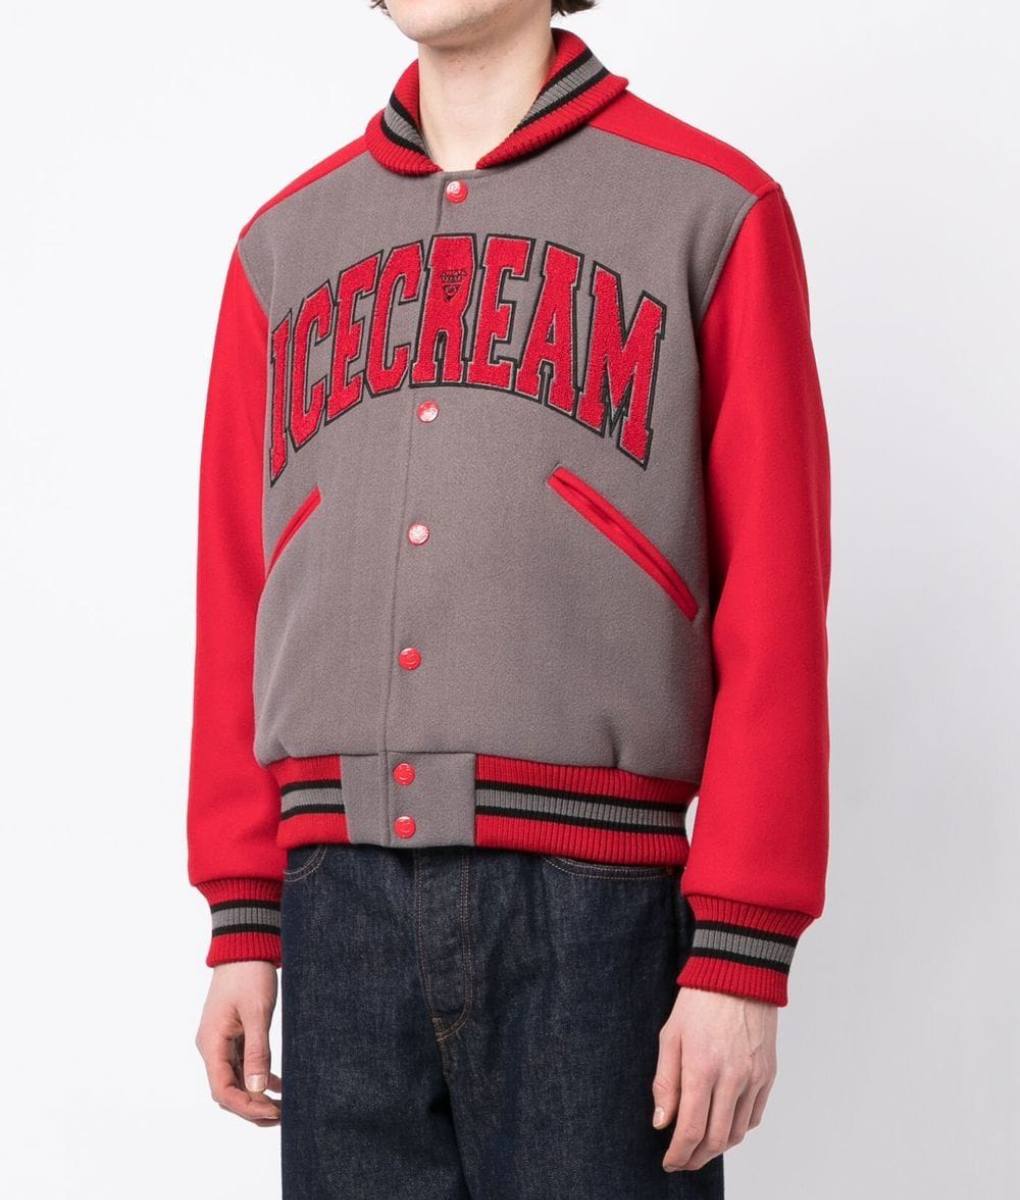 ICECREAM Gray and Red Varsity Jacket (7)